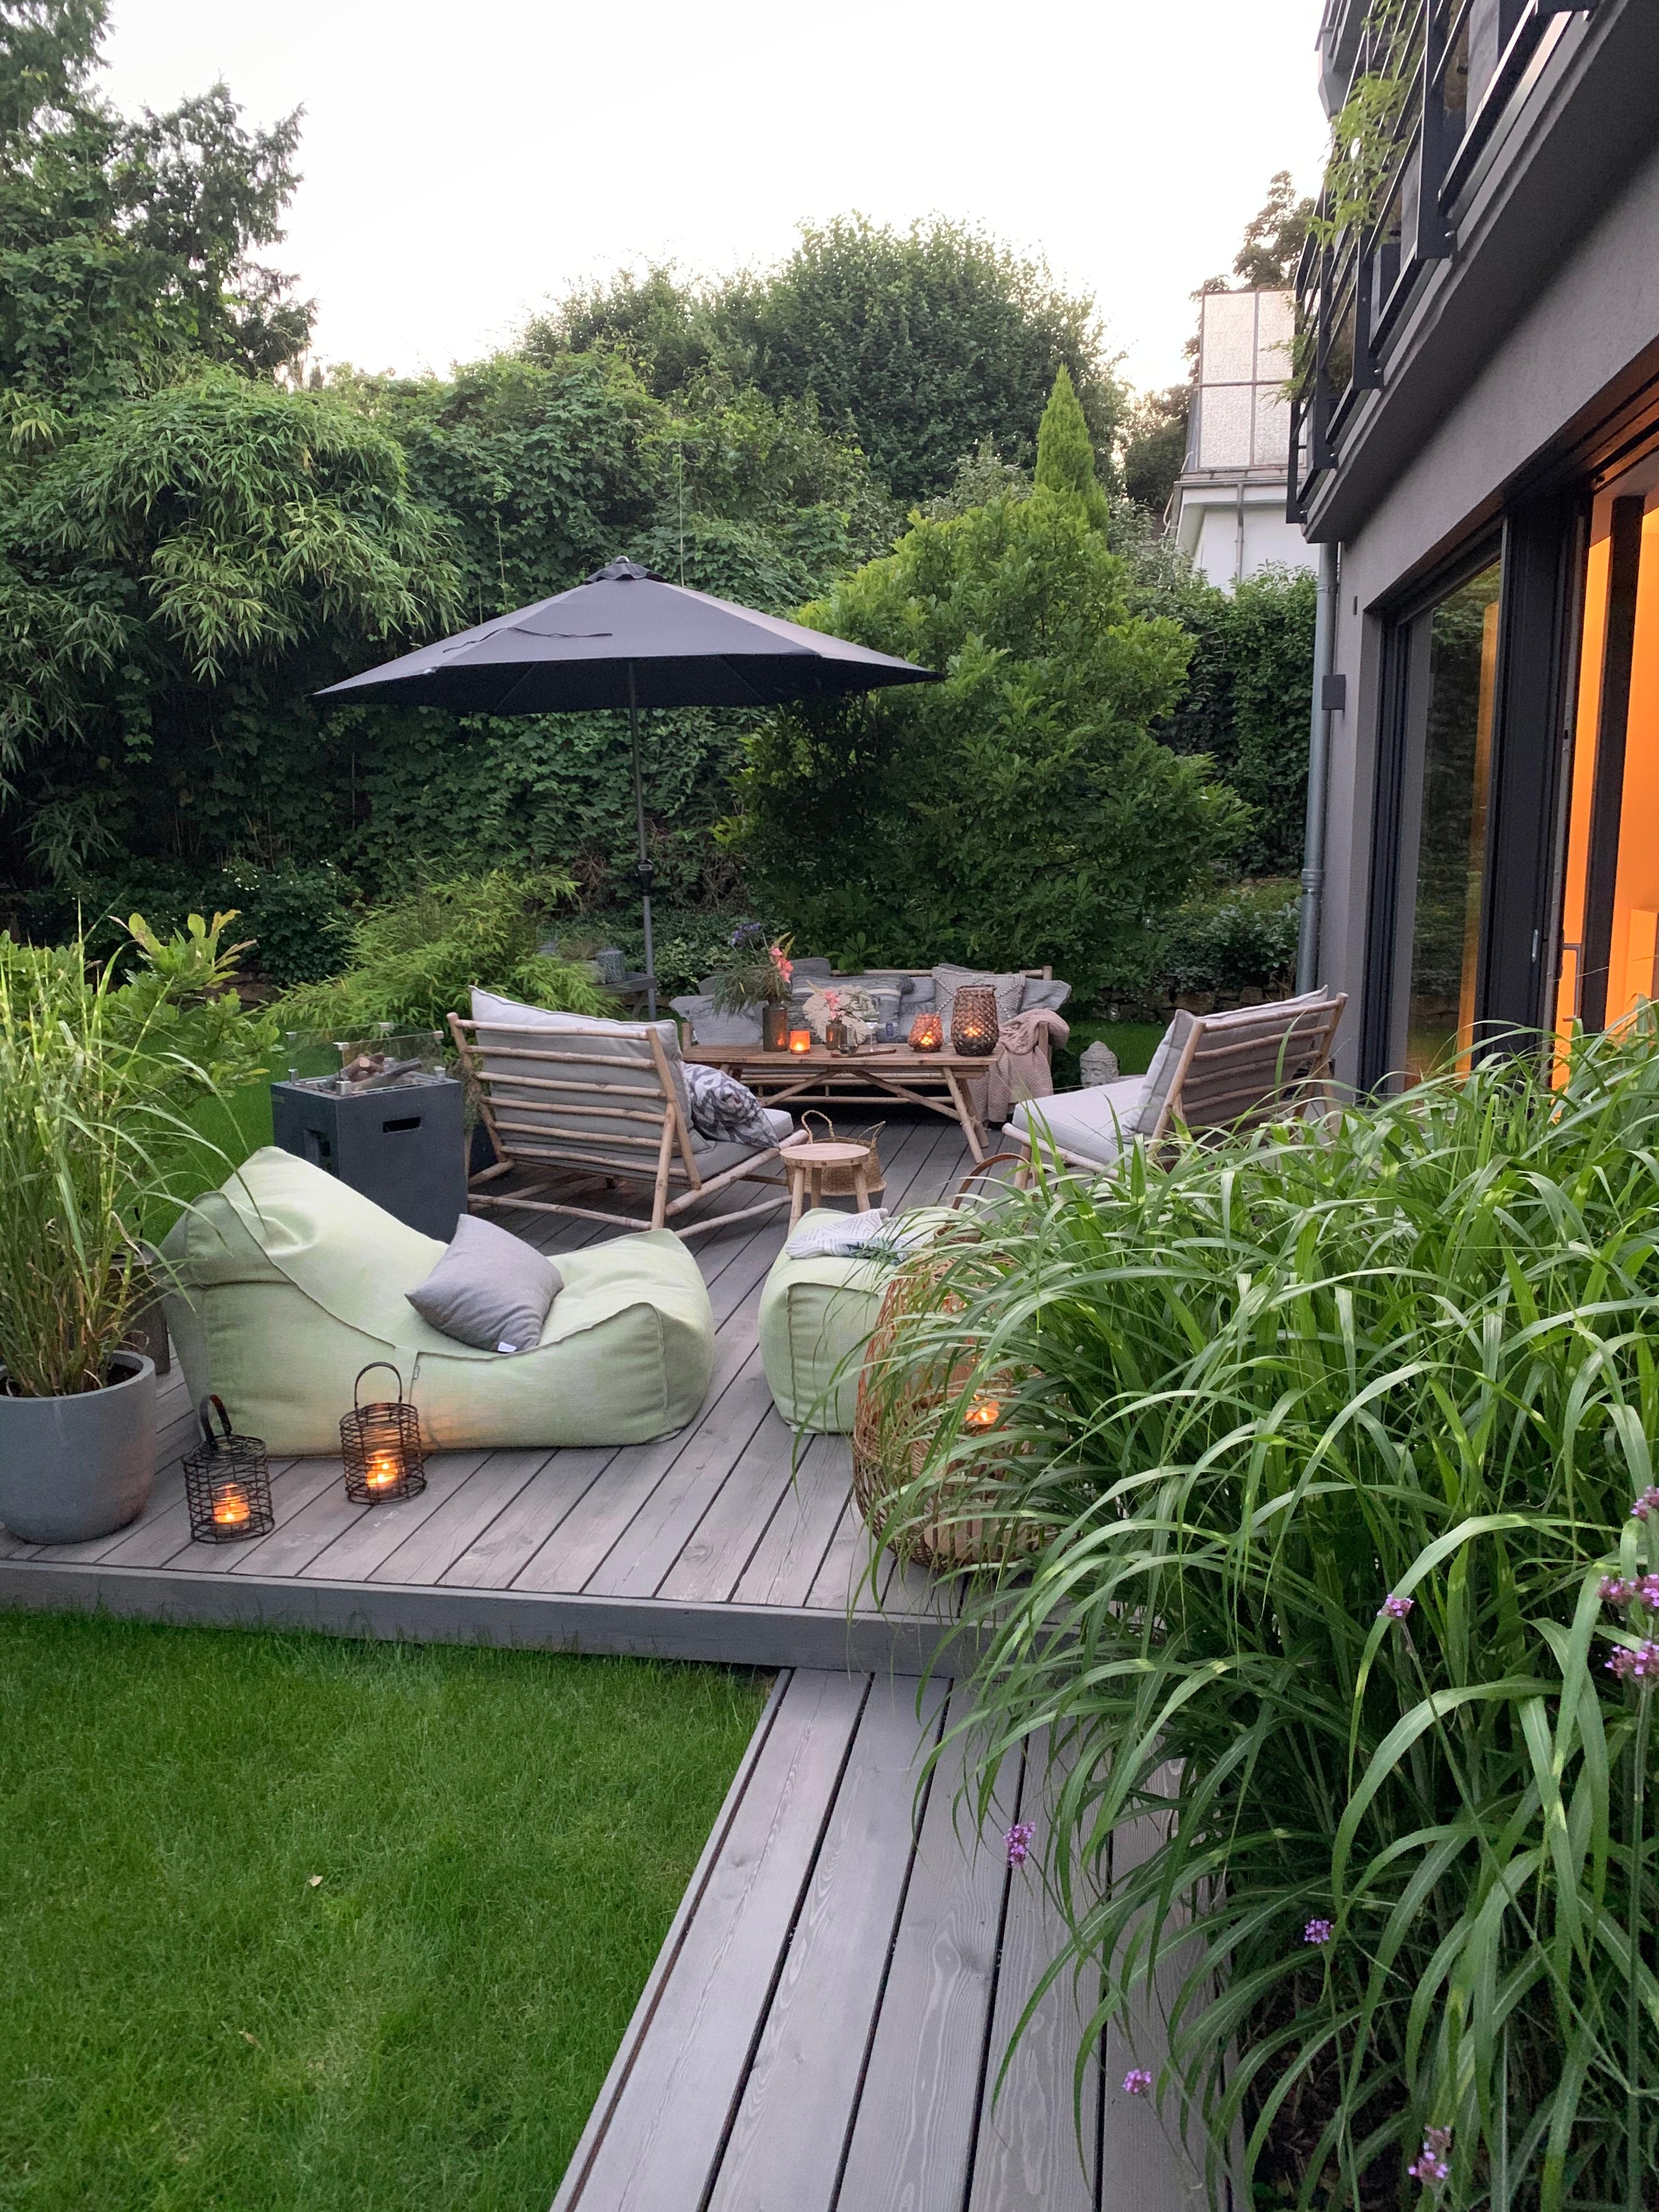 Evening Mood...🖤
#abendstimmung #garten #terrasse #beleuchtung #garden #garteninspiration #cozyevening #gartenmöbel 